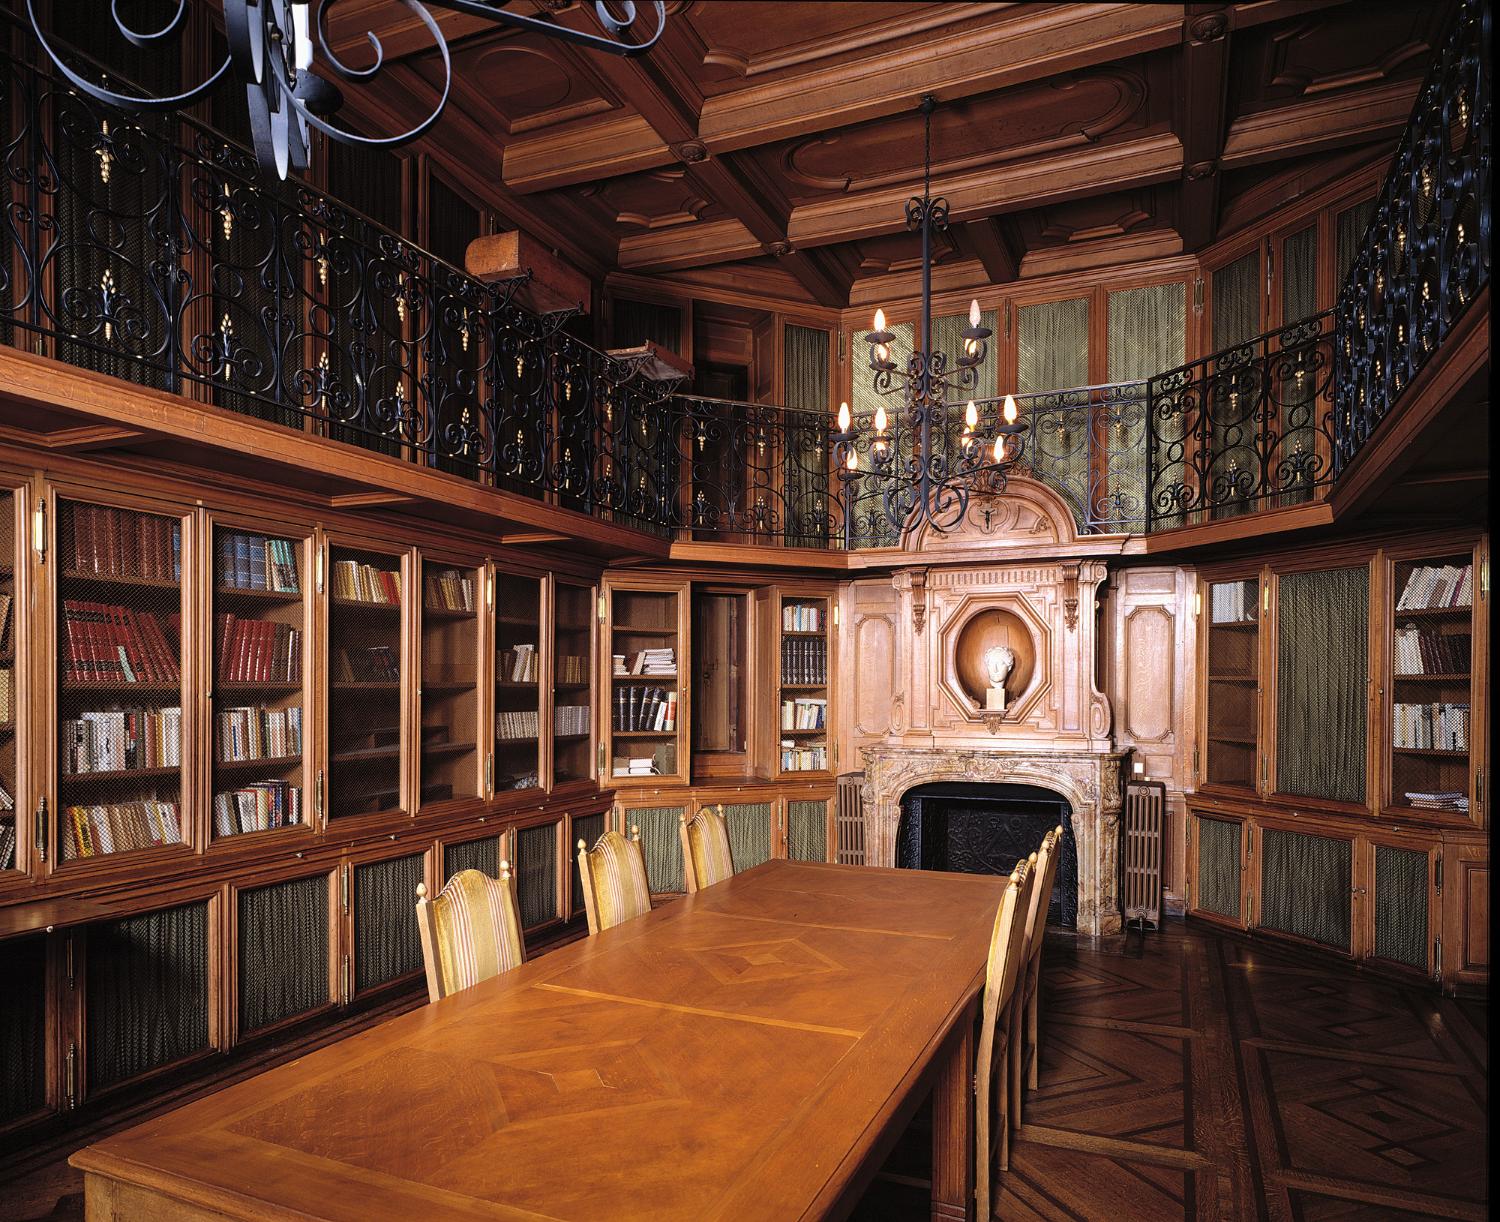 ensemble du mobilier de la bibliothèque : étagère-bibliothèque, garde-corps, cheminée et plafond